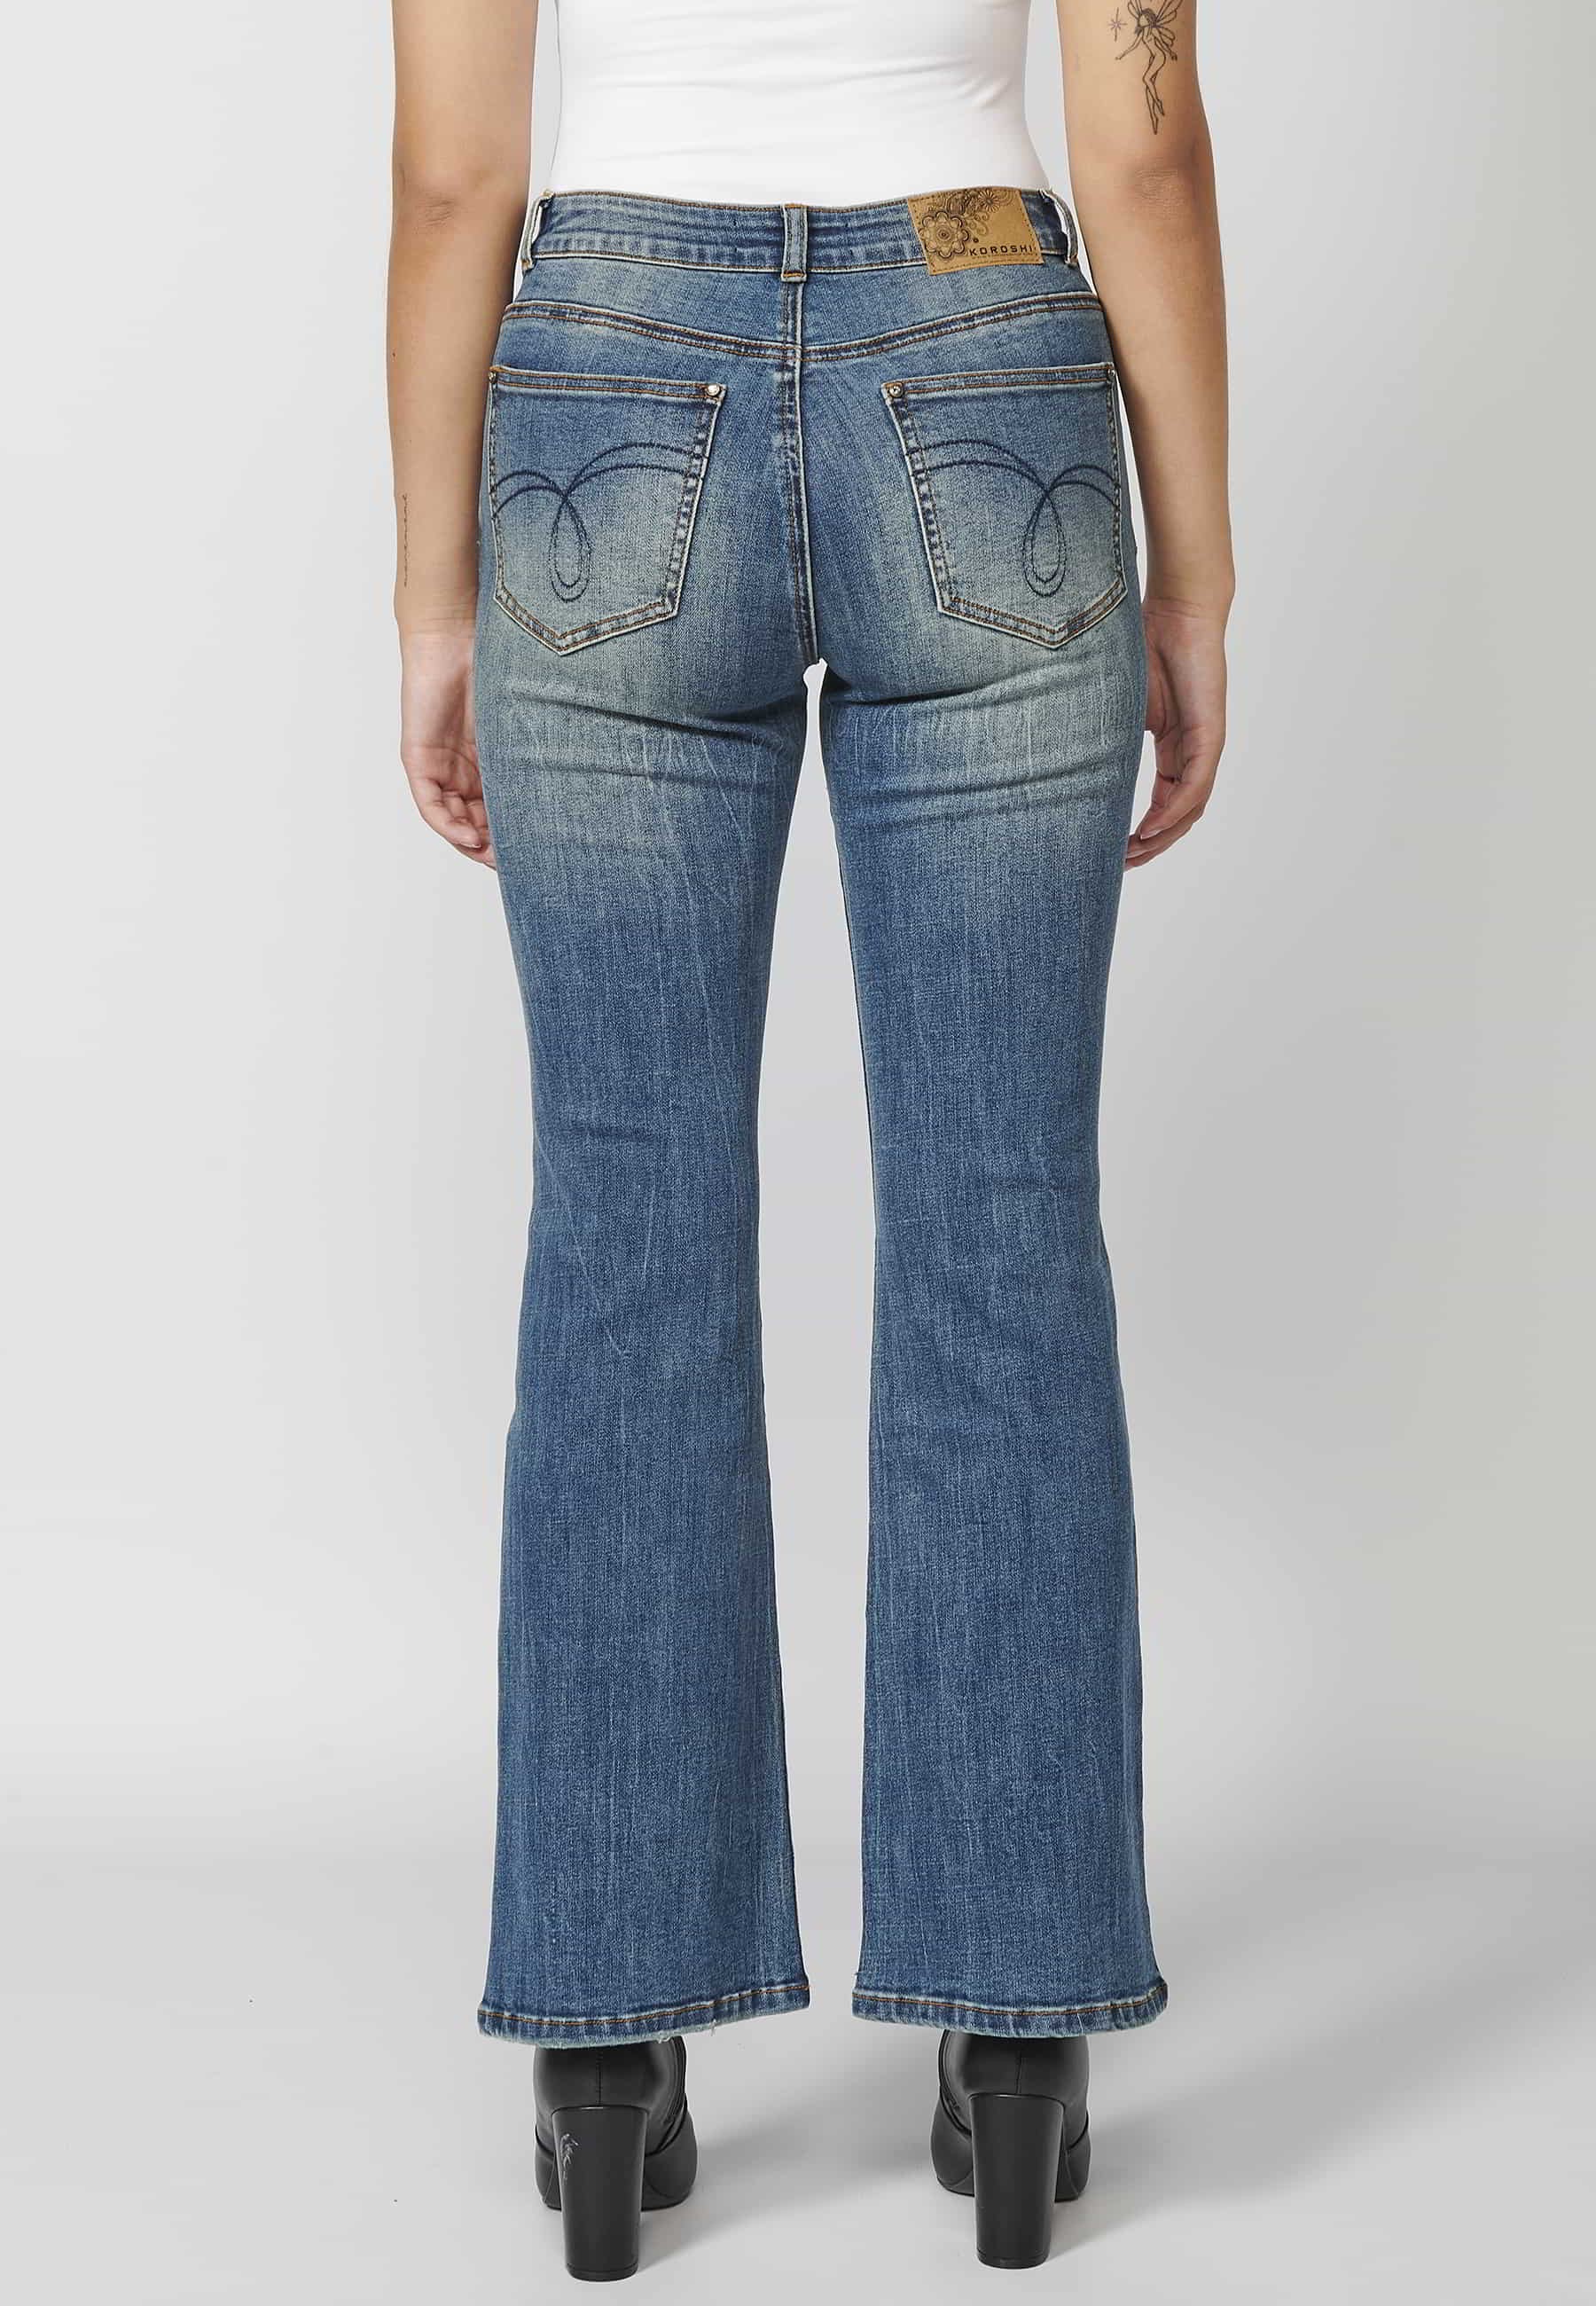 Pantalon long évasé en jean avec détails brodés dans les poches, coloris Bleu Foncé pour Femme